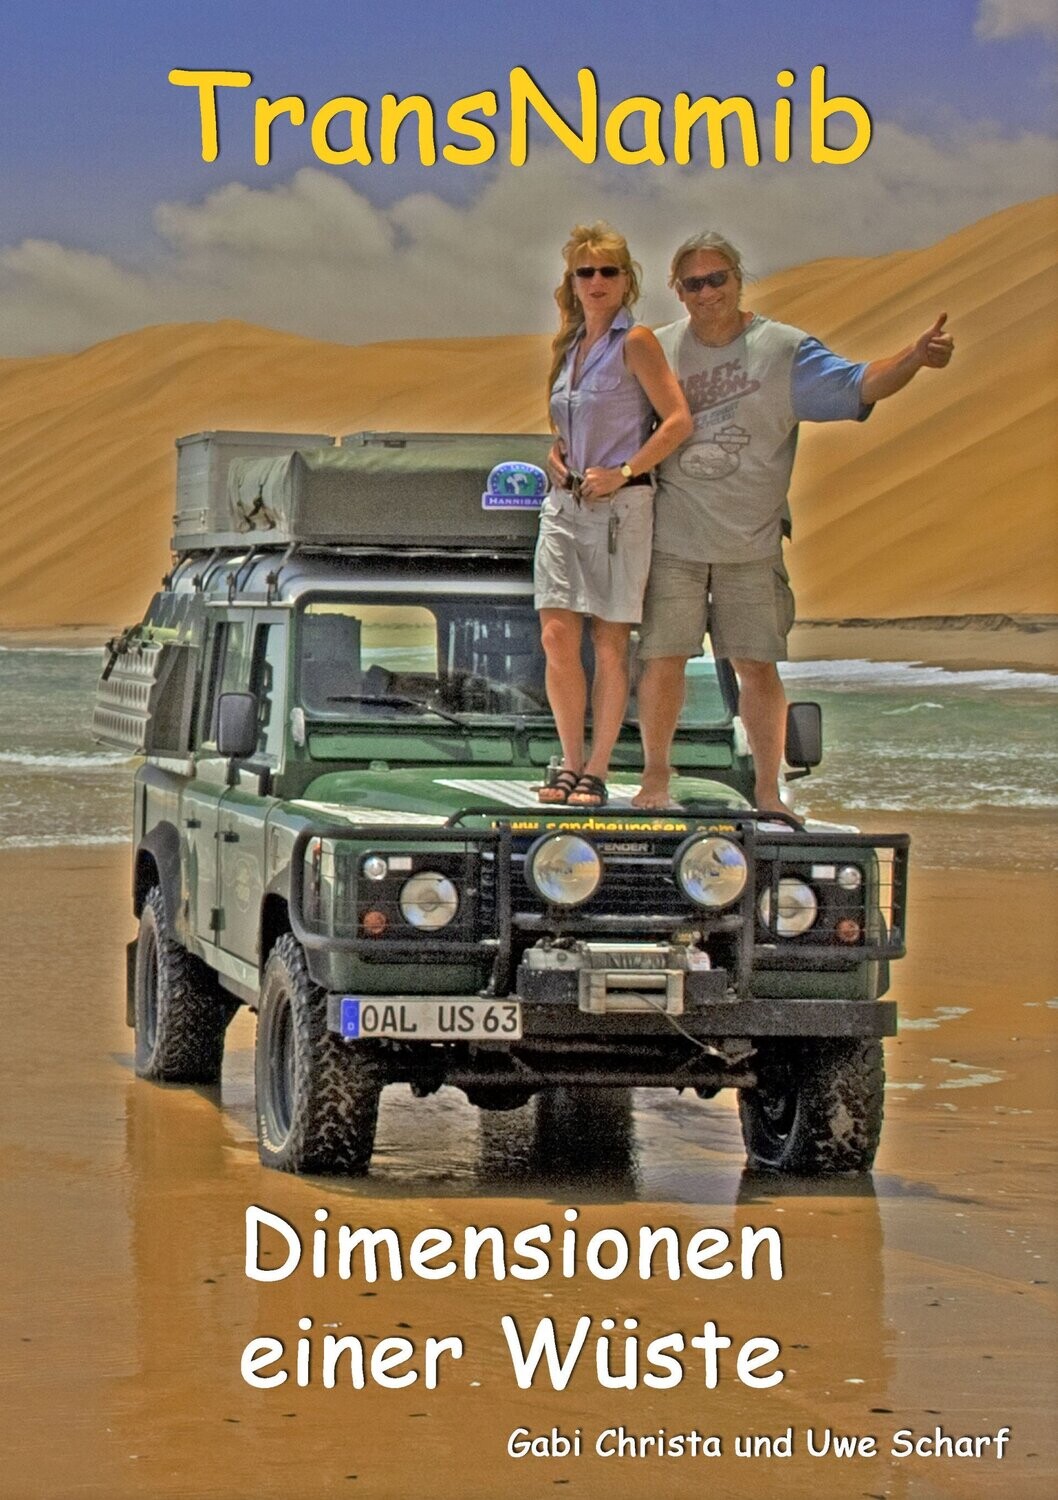 TransNamib:
Dimensionen einer Wüste